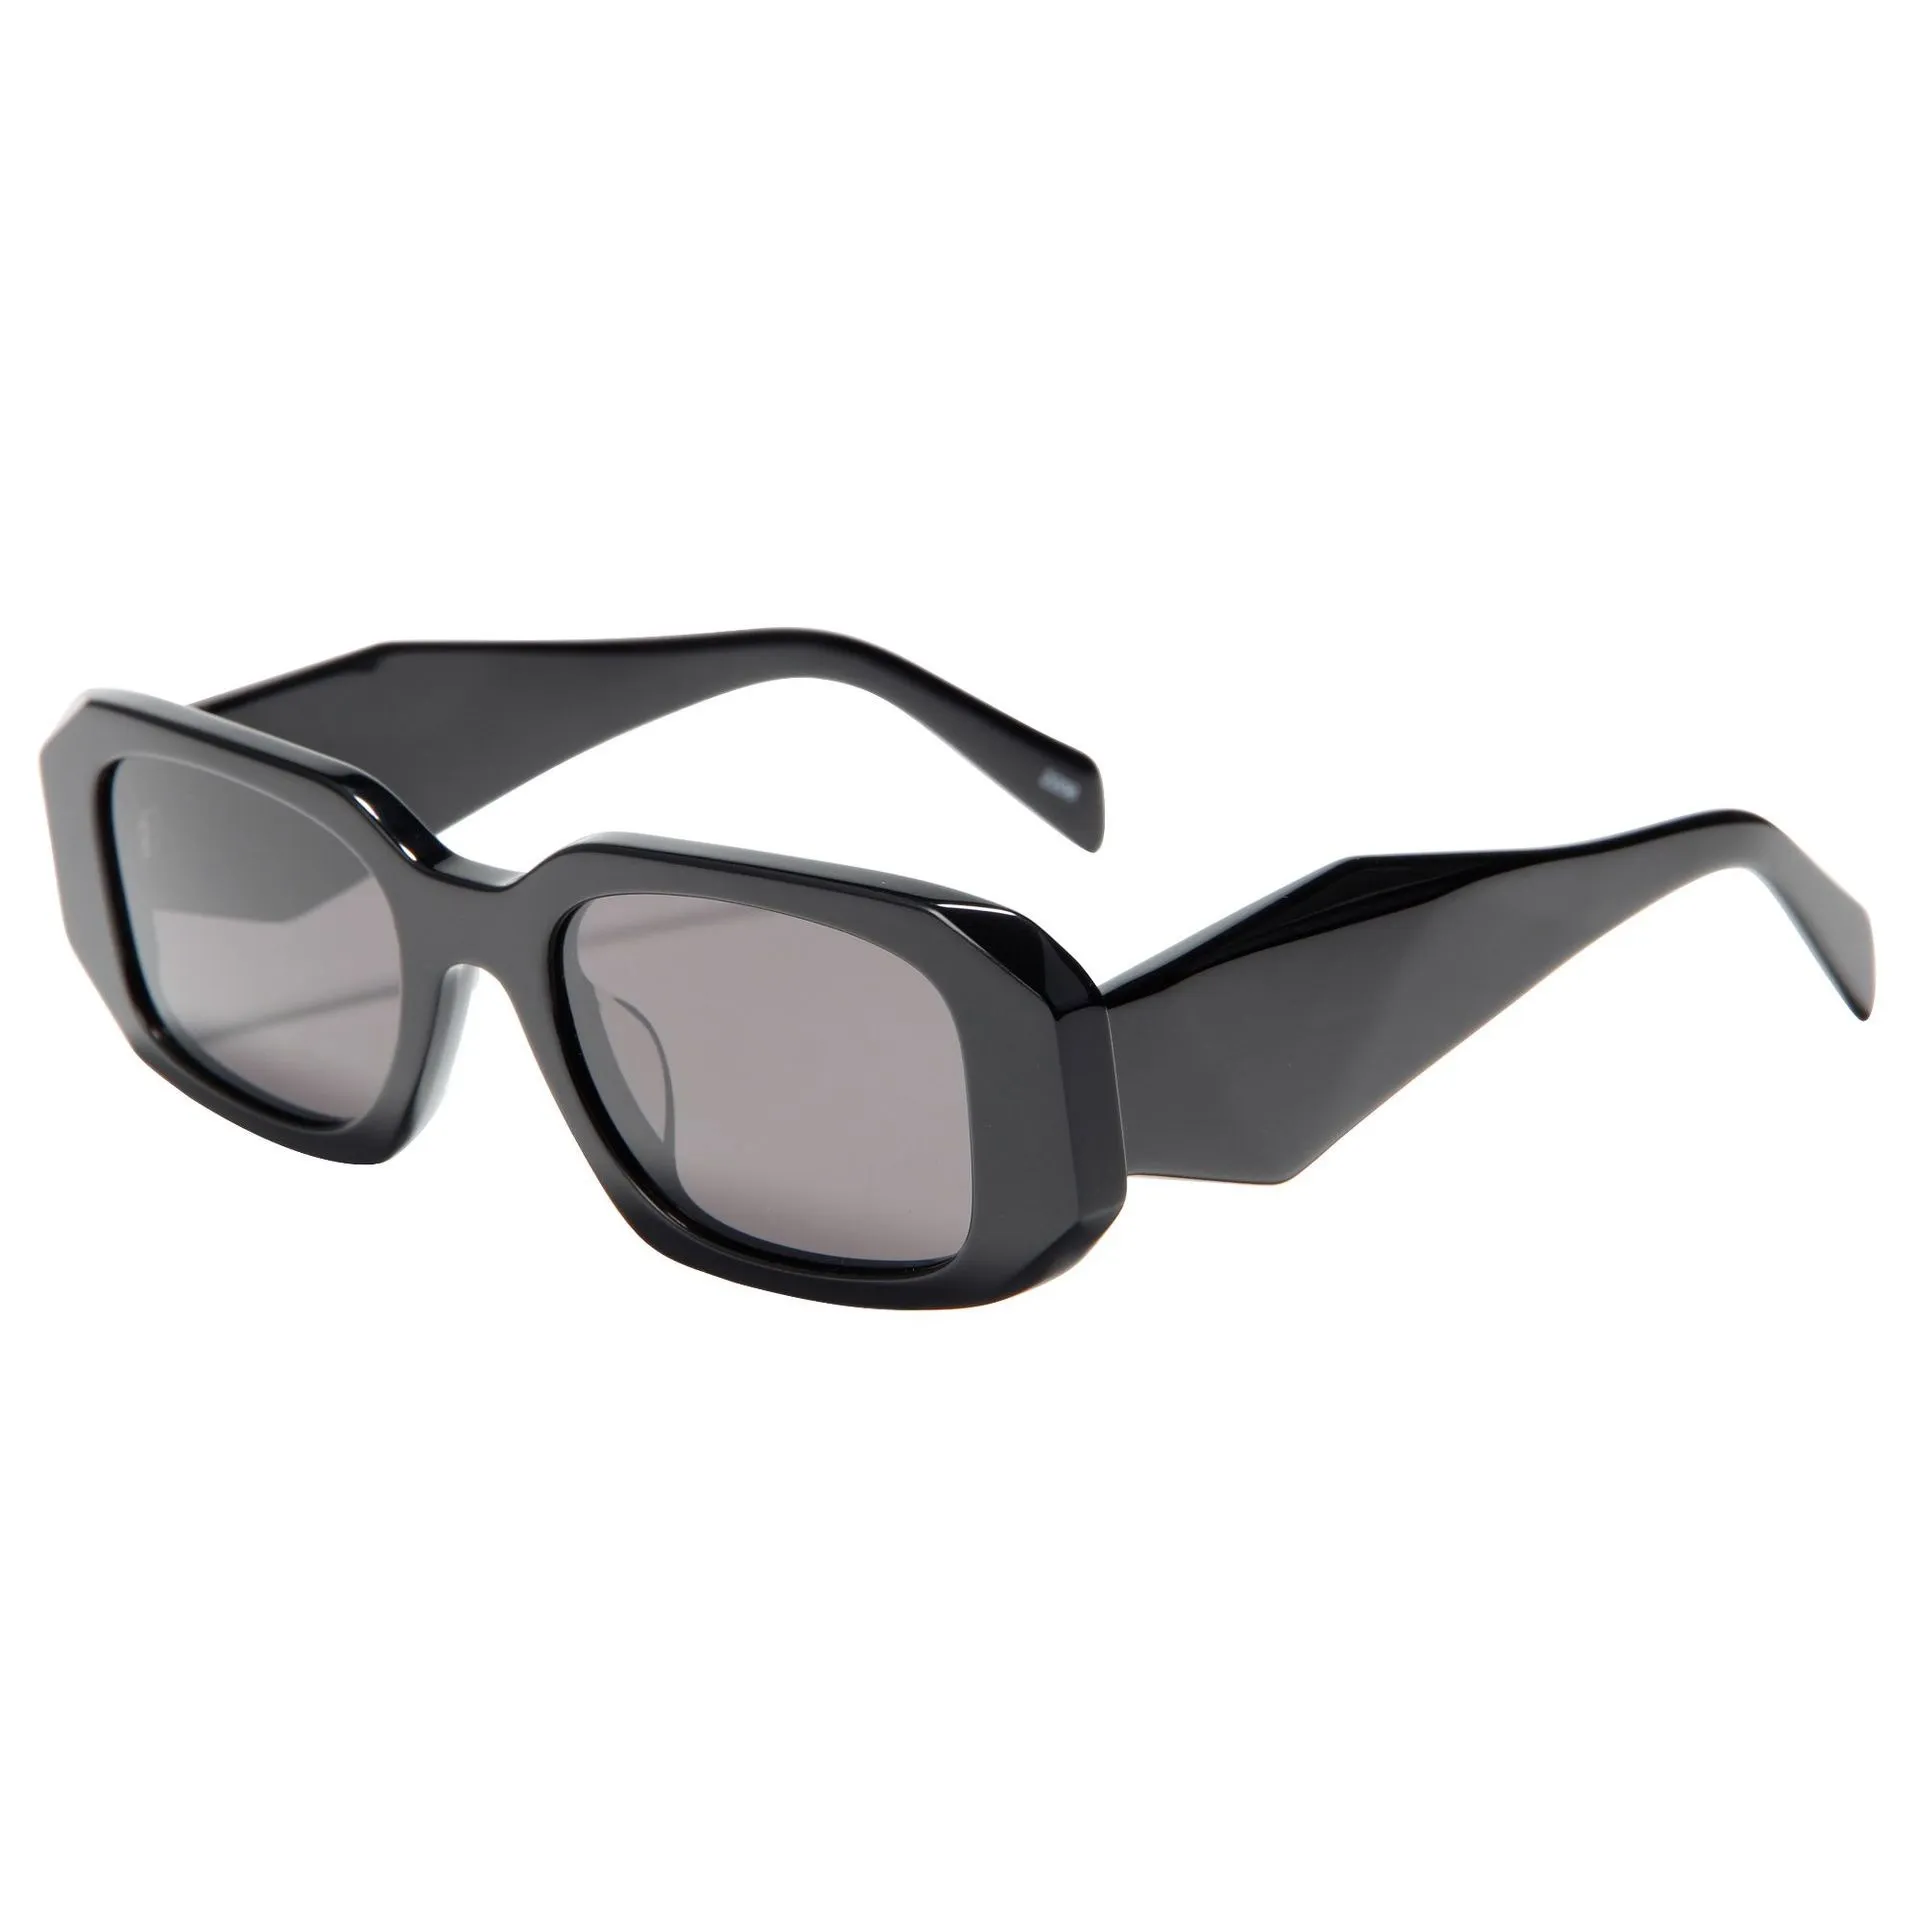 Nuevo tipo de gafas de sol de hip-hop con montura grande universal desnuda, gafas de sol con montura de alta definición y cara ovalada, gafas de sol con tablero de color sólido